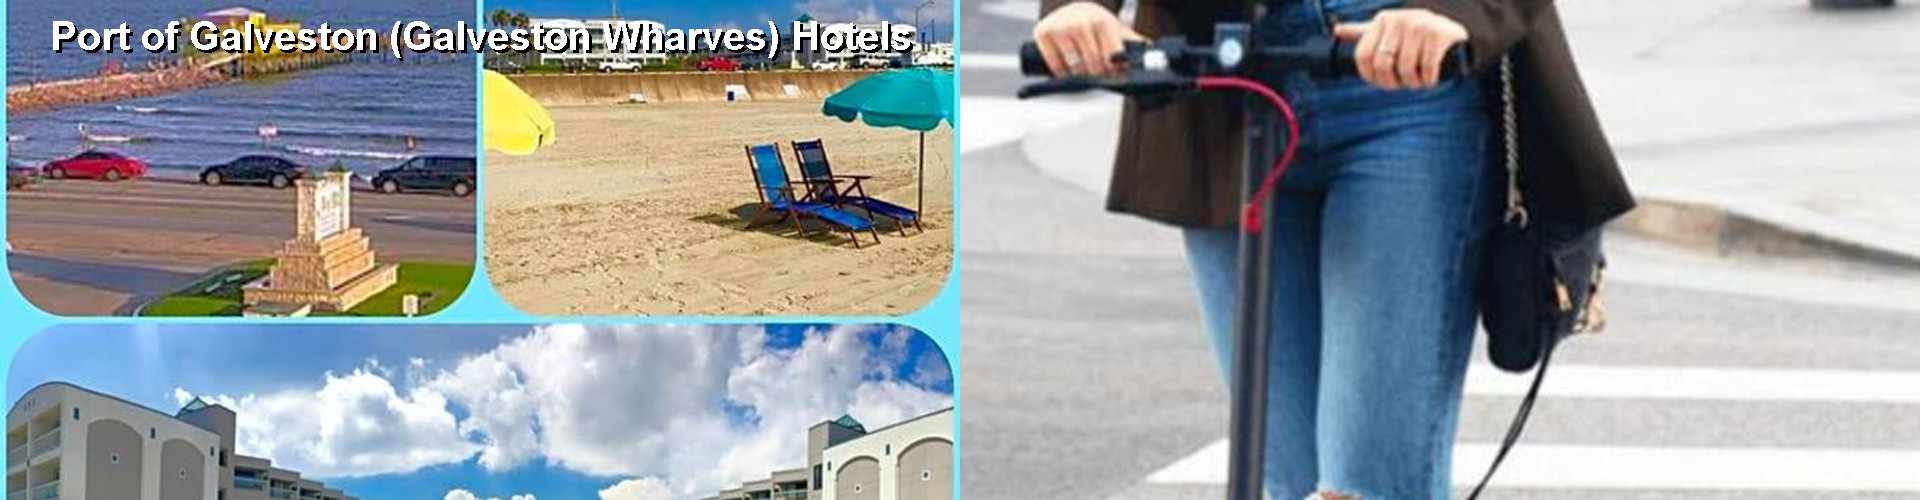 5 Best Hotels near Port of Galveston (Galveston Wharves)